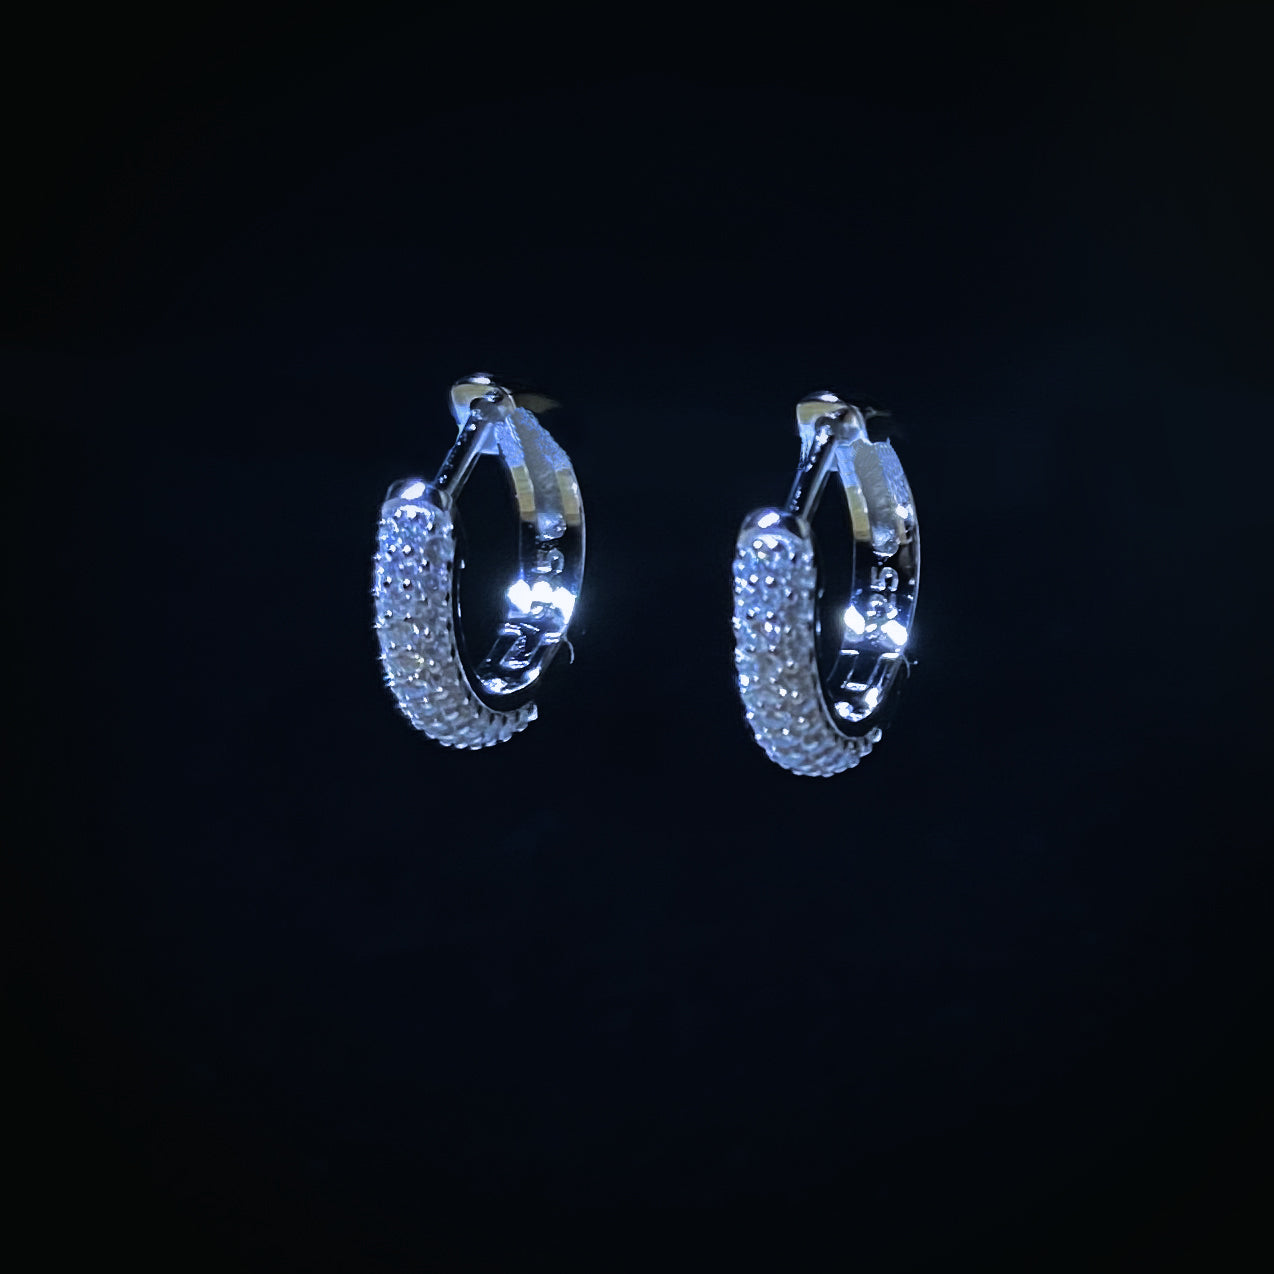 Iced Minimalist Hoop Earrings - Pair